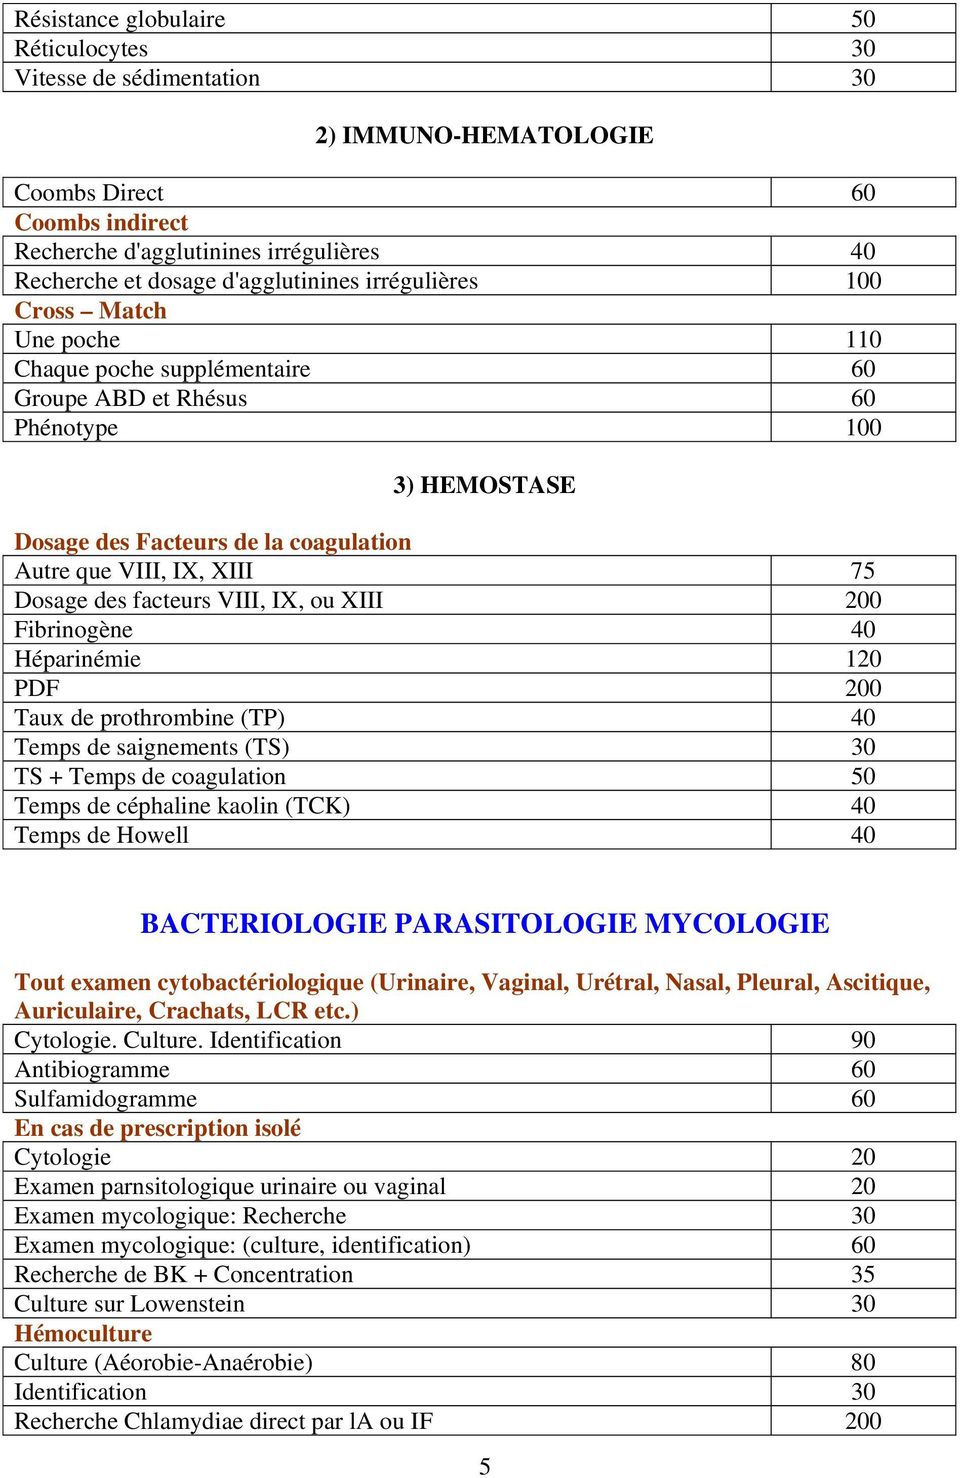 XIII 75 Dosage des facteurs VIII, IX, ou XIII 200 Fibrinogène 40 Héparinémie 120 PDF 200 Taux de prothrombine (TP) 40 Temps de saignements (TS) 30 TS + Temps de coagulation 50 Temps de céphaline